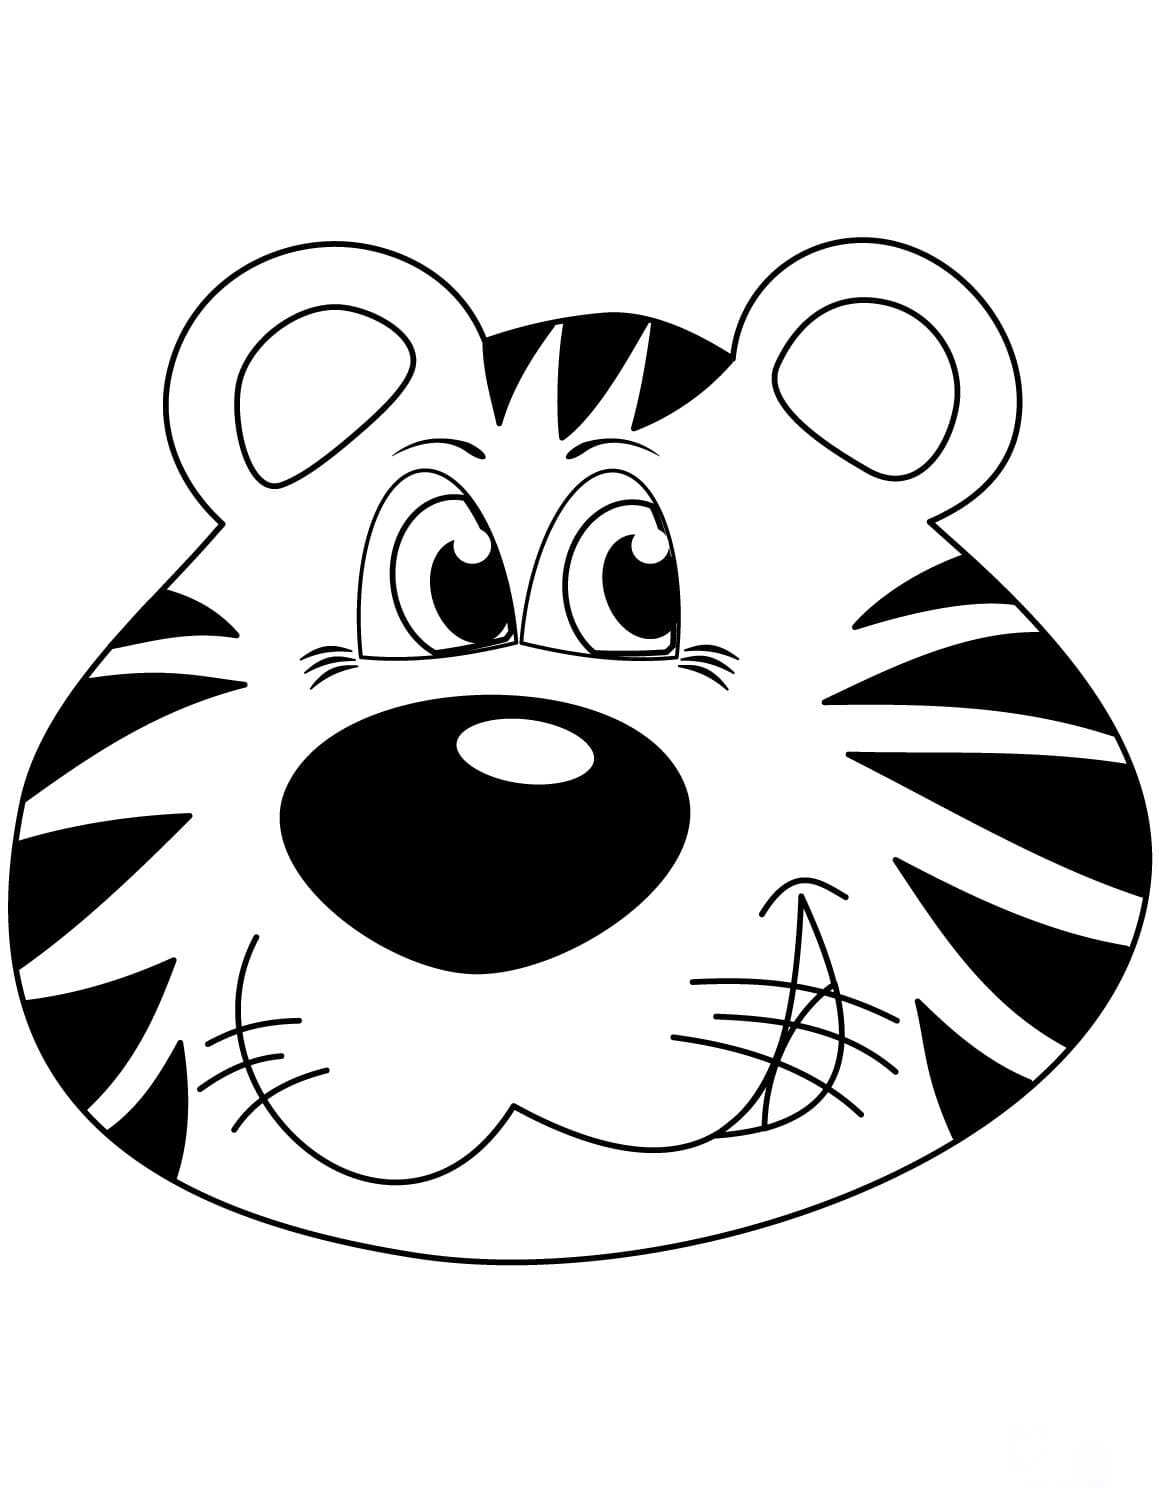 Jaunty cartoon tiger head Coloring Page